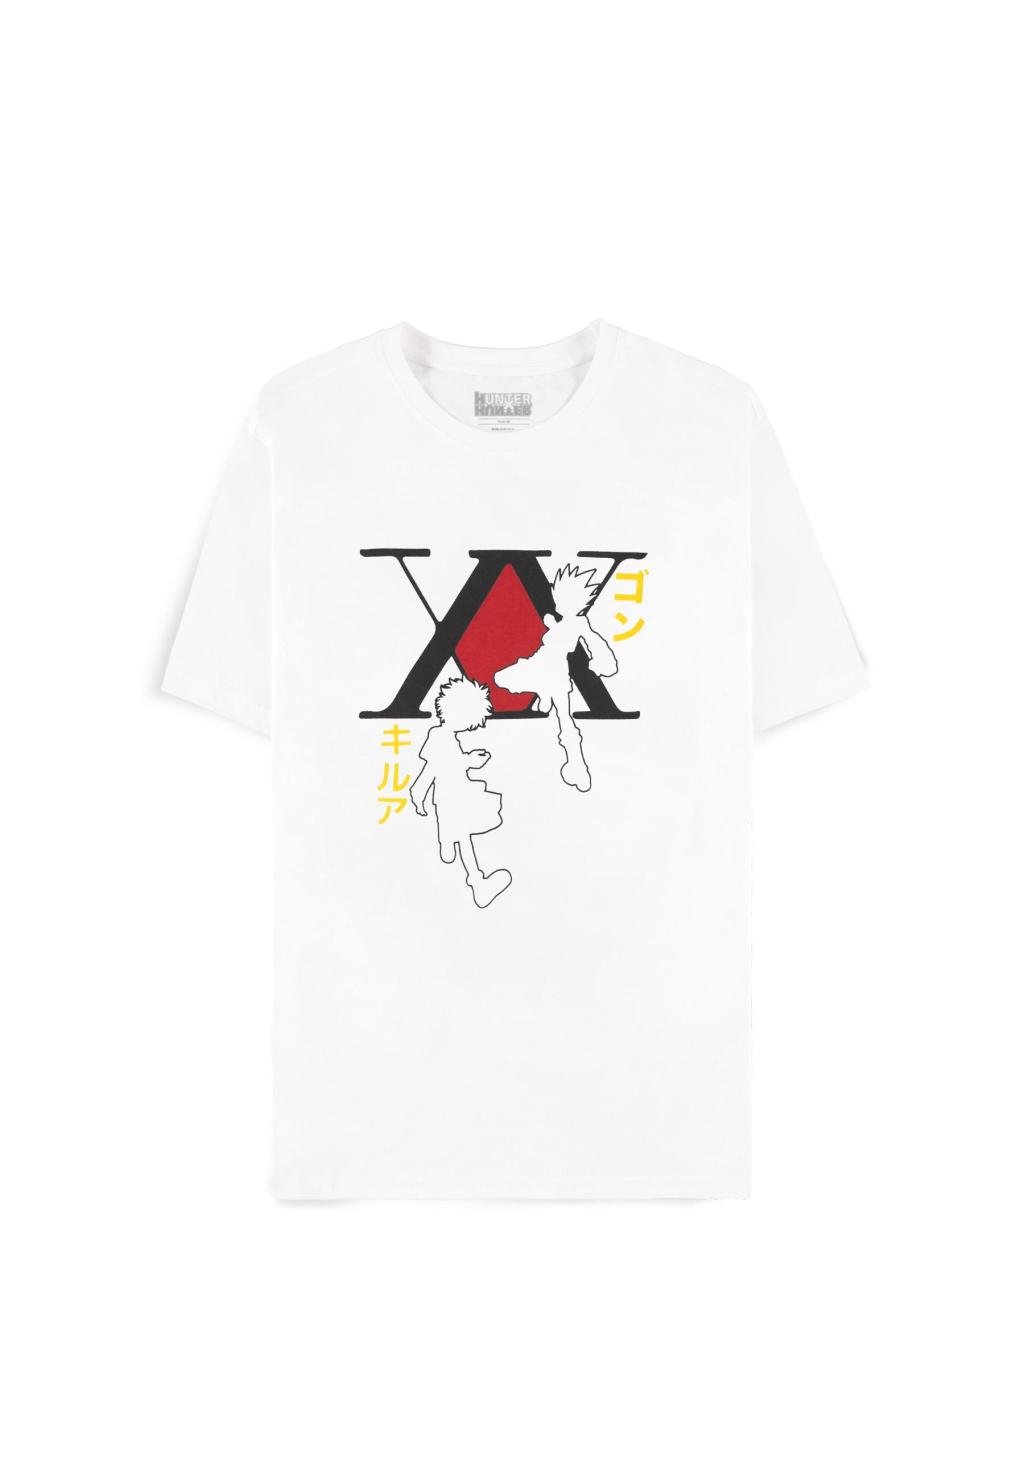 HUNTER X HUNTER - Gon & Kirua - Men's T-shirt (XS)